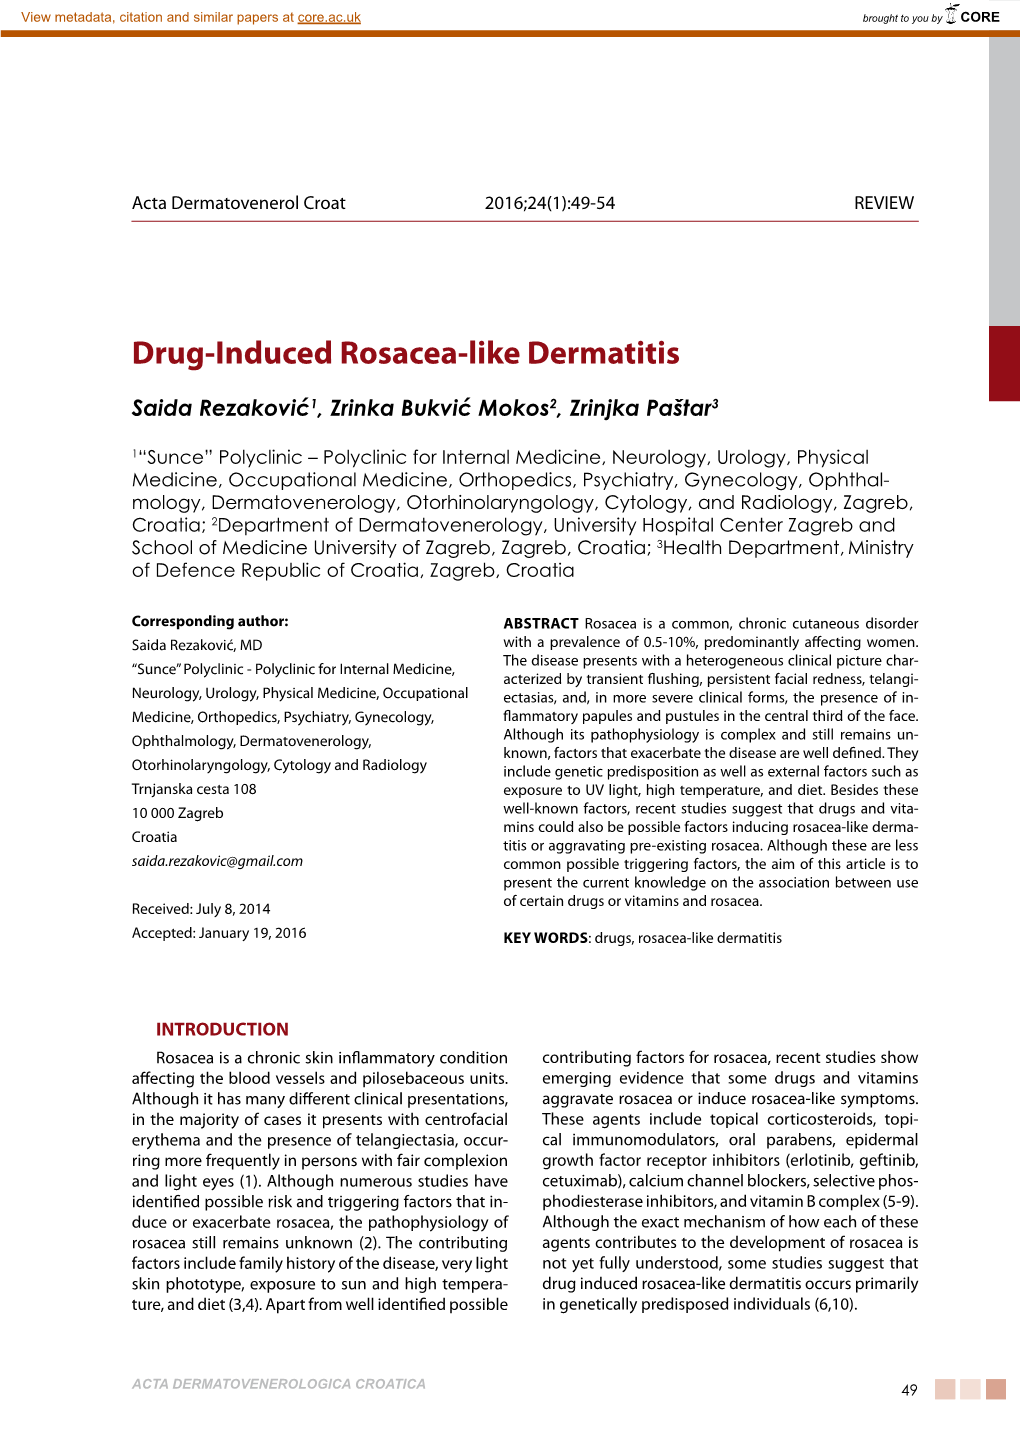 Drug-Induced Rosacea-Like Dermatitis